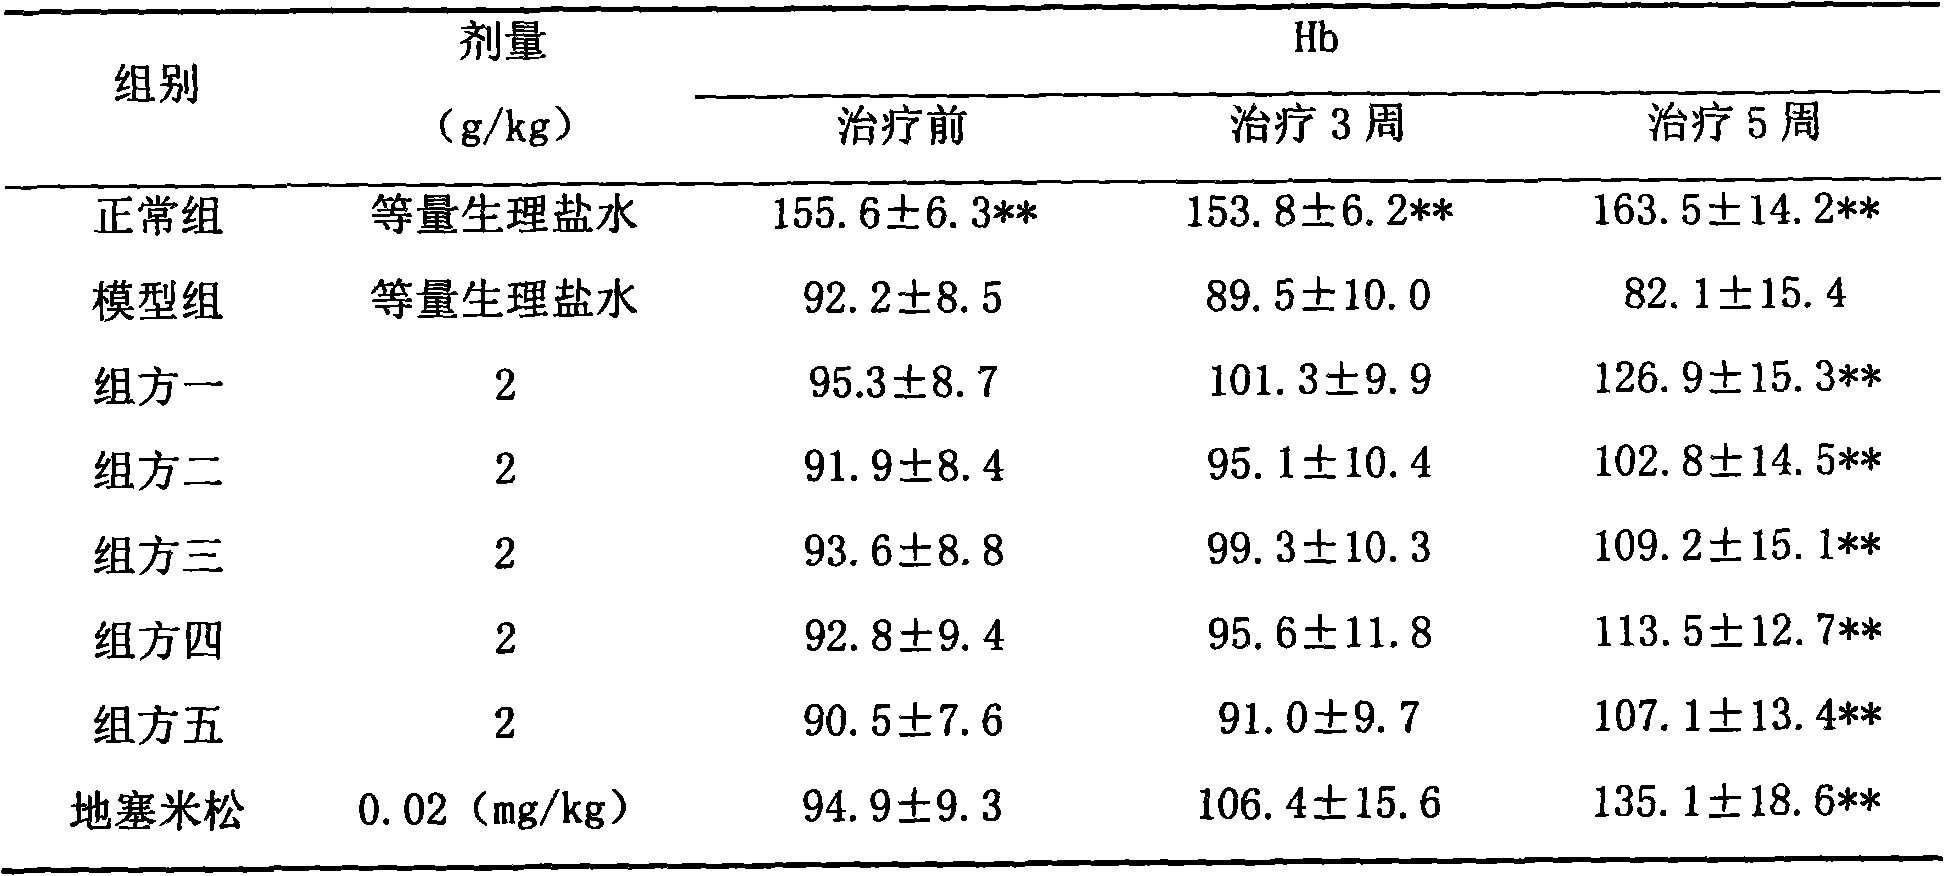 Shenkang aerosol for treating chronic renal failure and preparation method of Shenkang aerosol